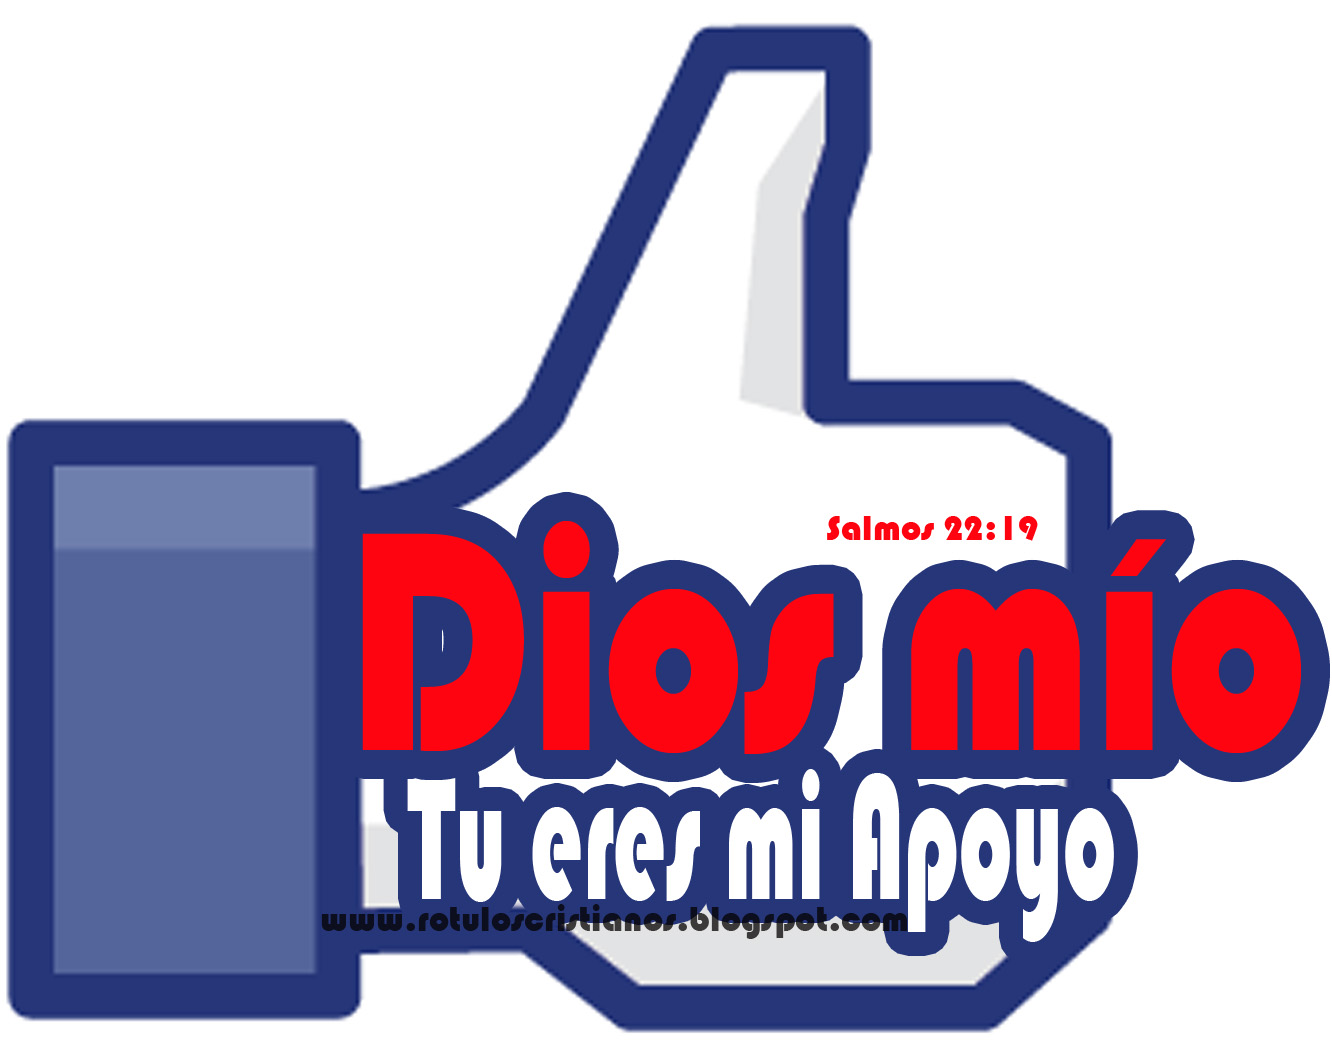 Imagenes cristianas: Imagenes para Facebook - Dios mio tu eres mi apoyo